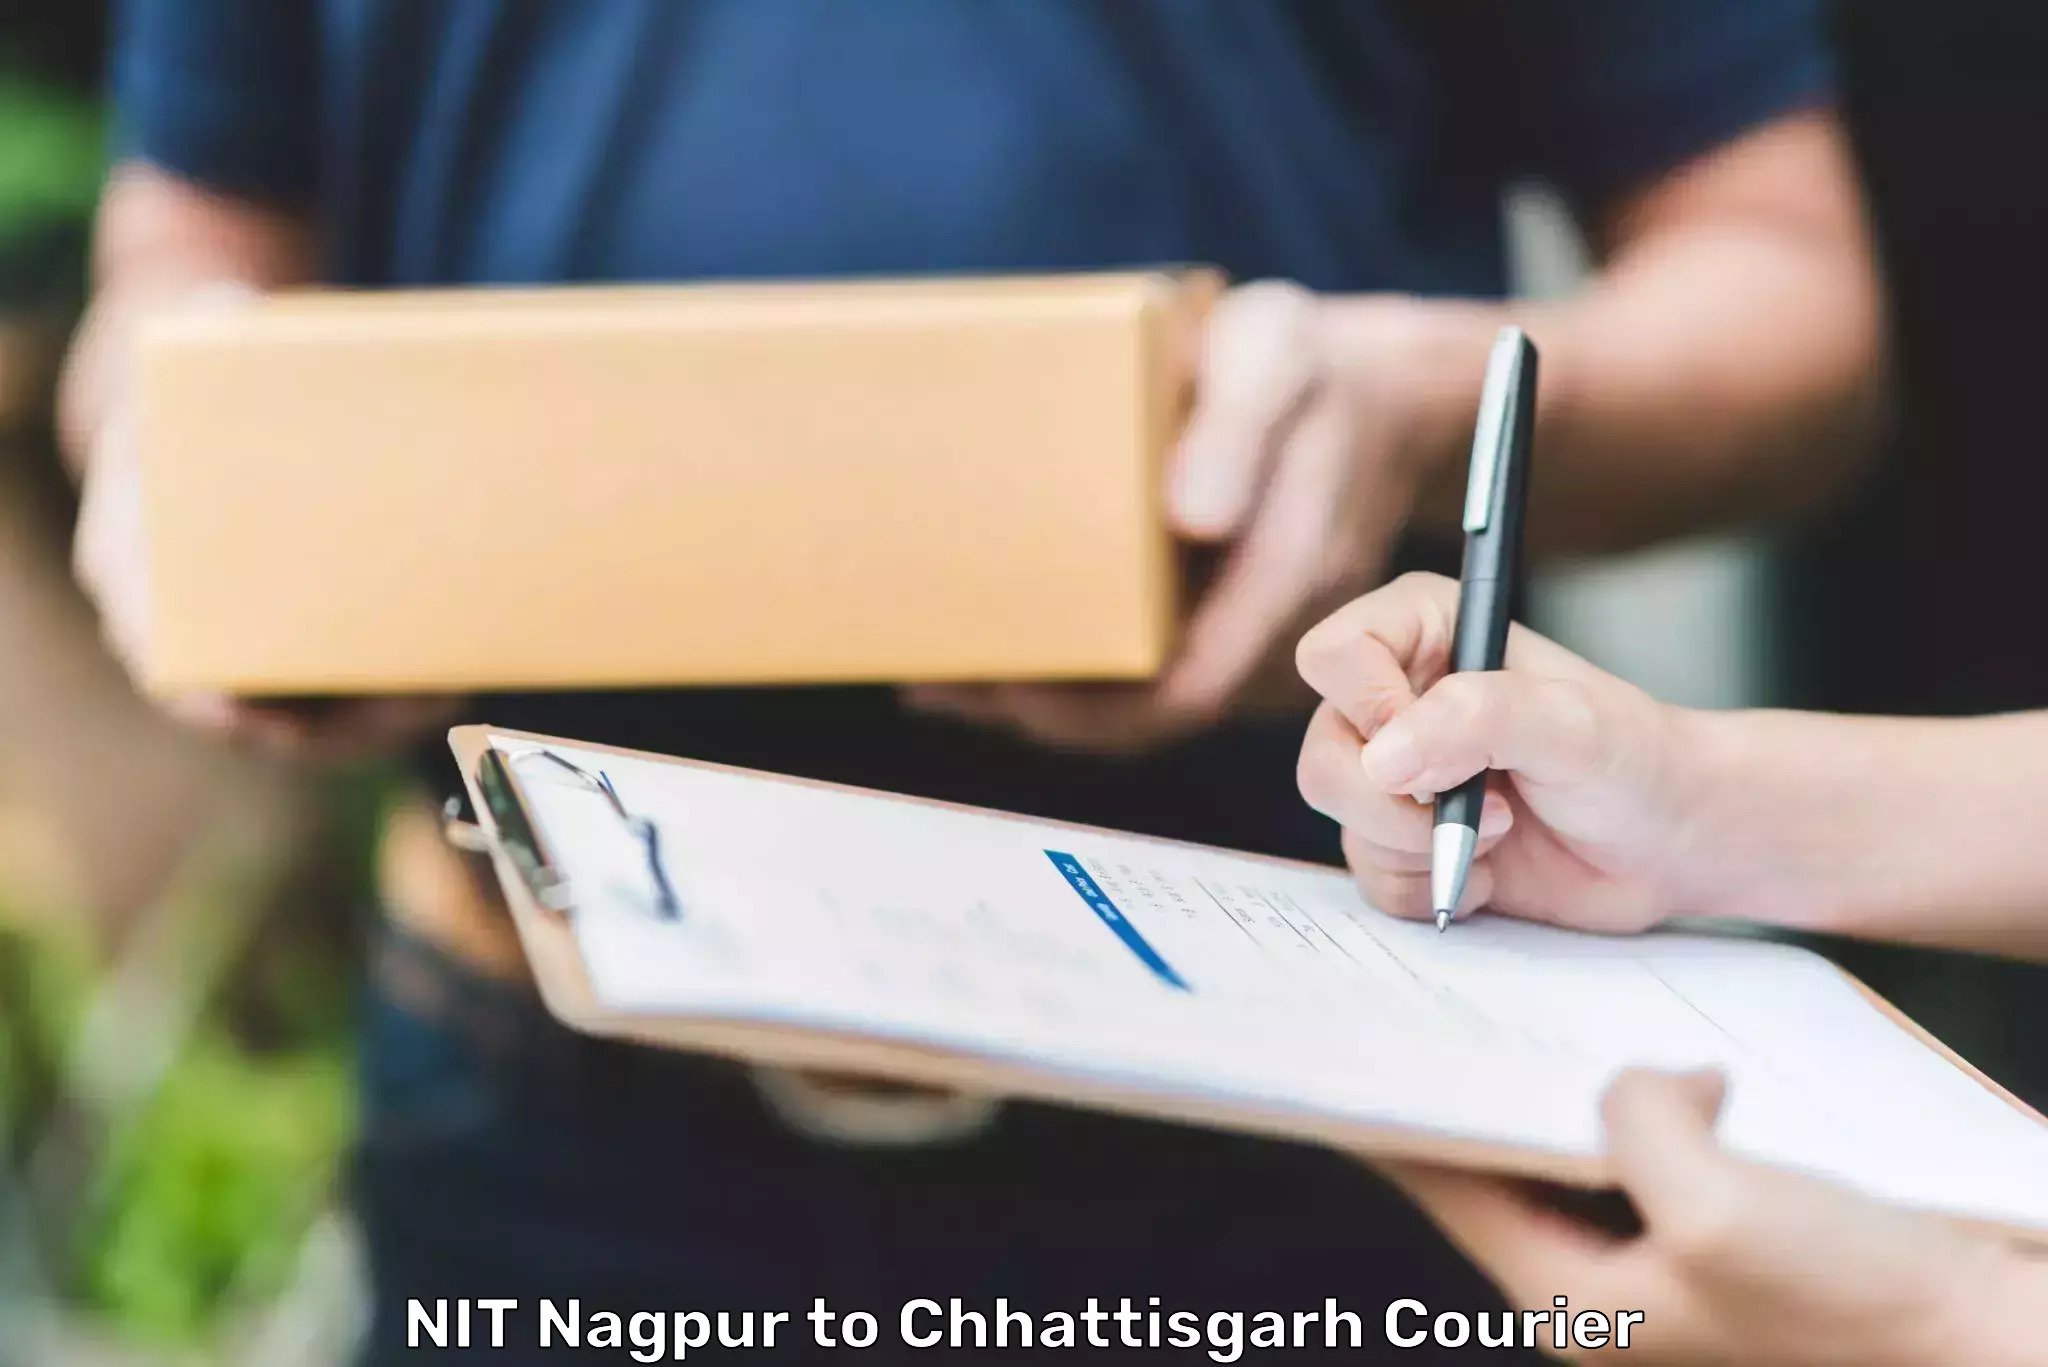 Courier service comparison NIT Nagpur to Surajpur